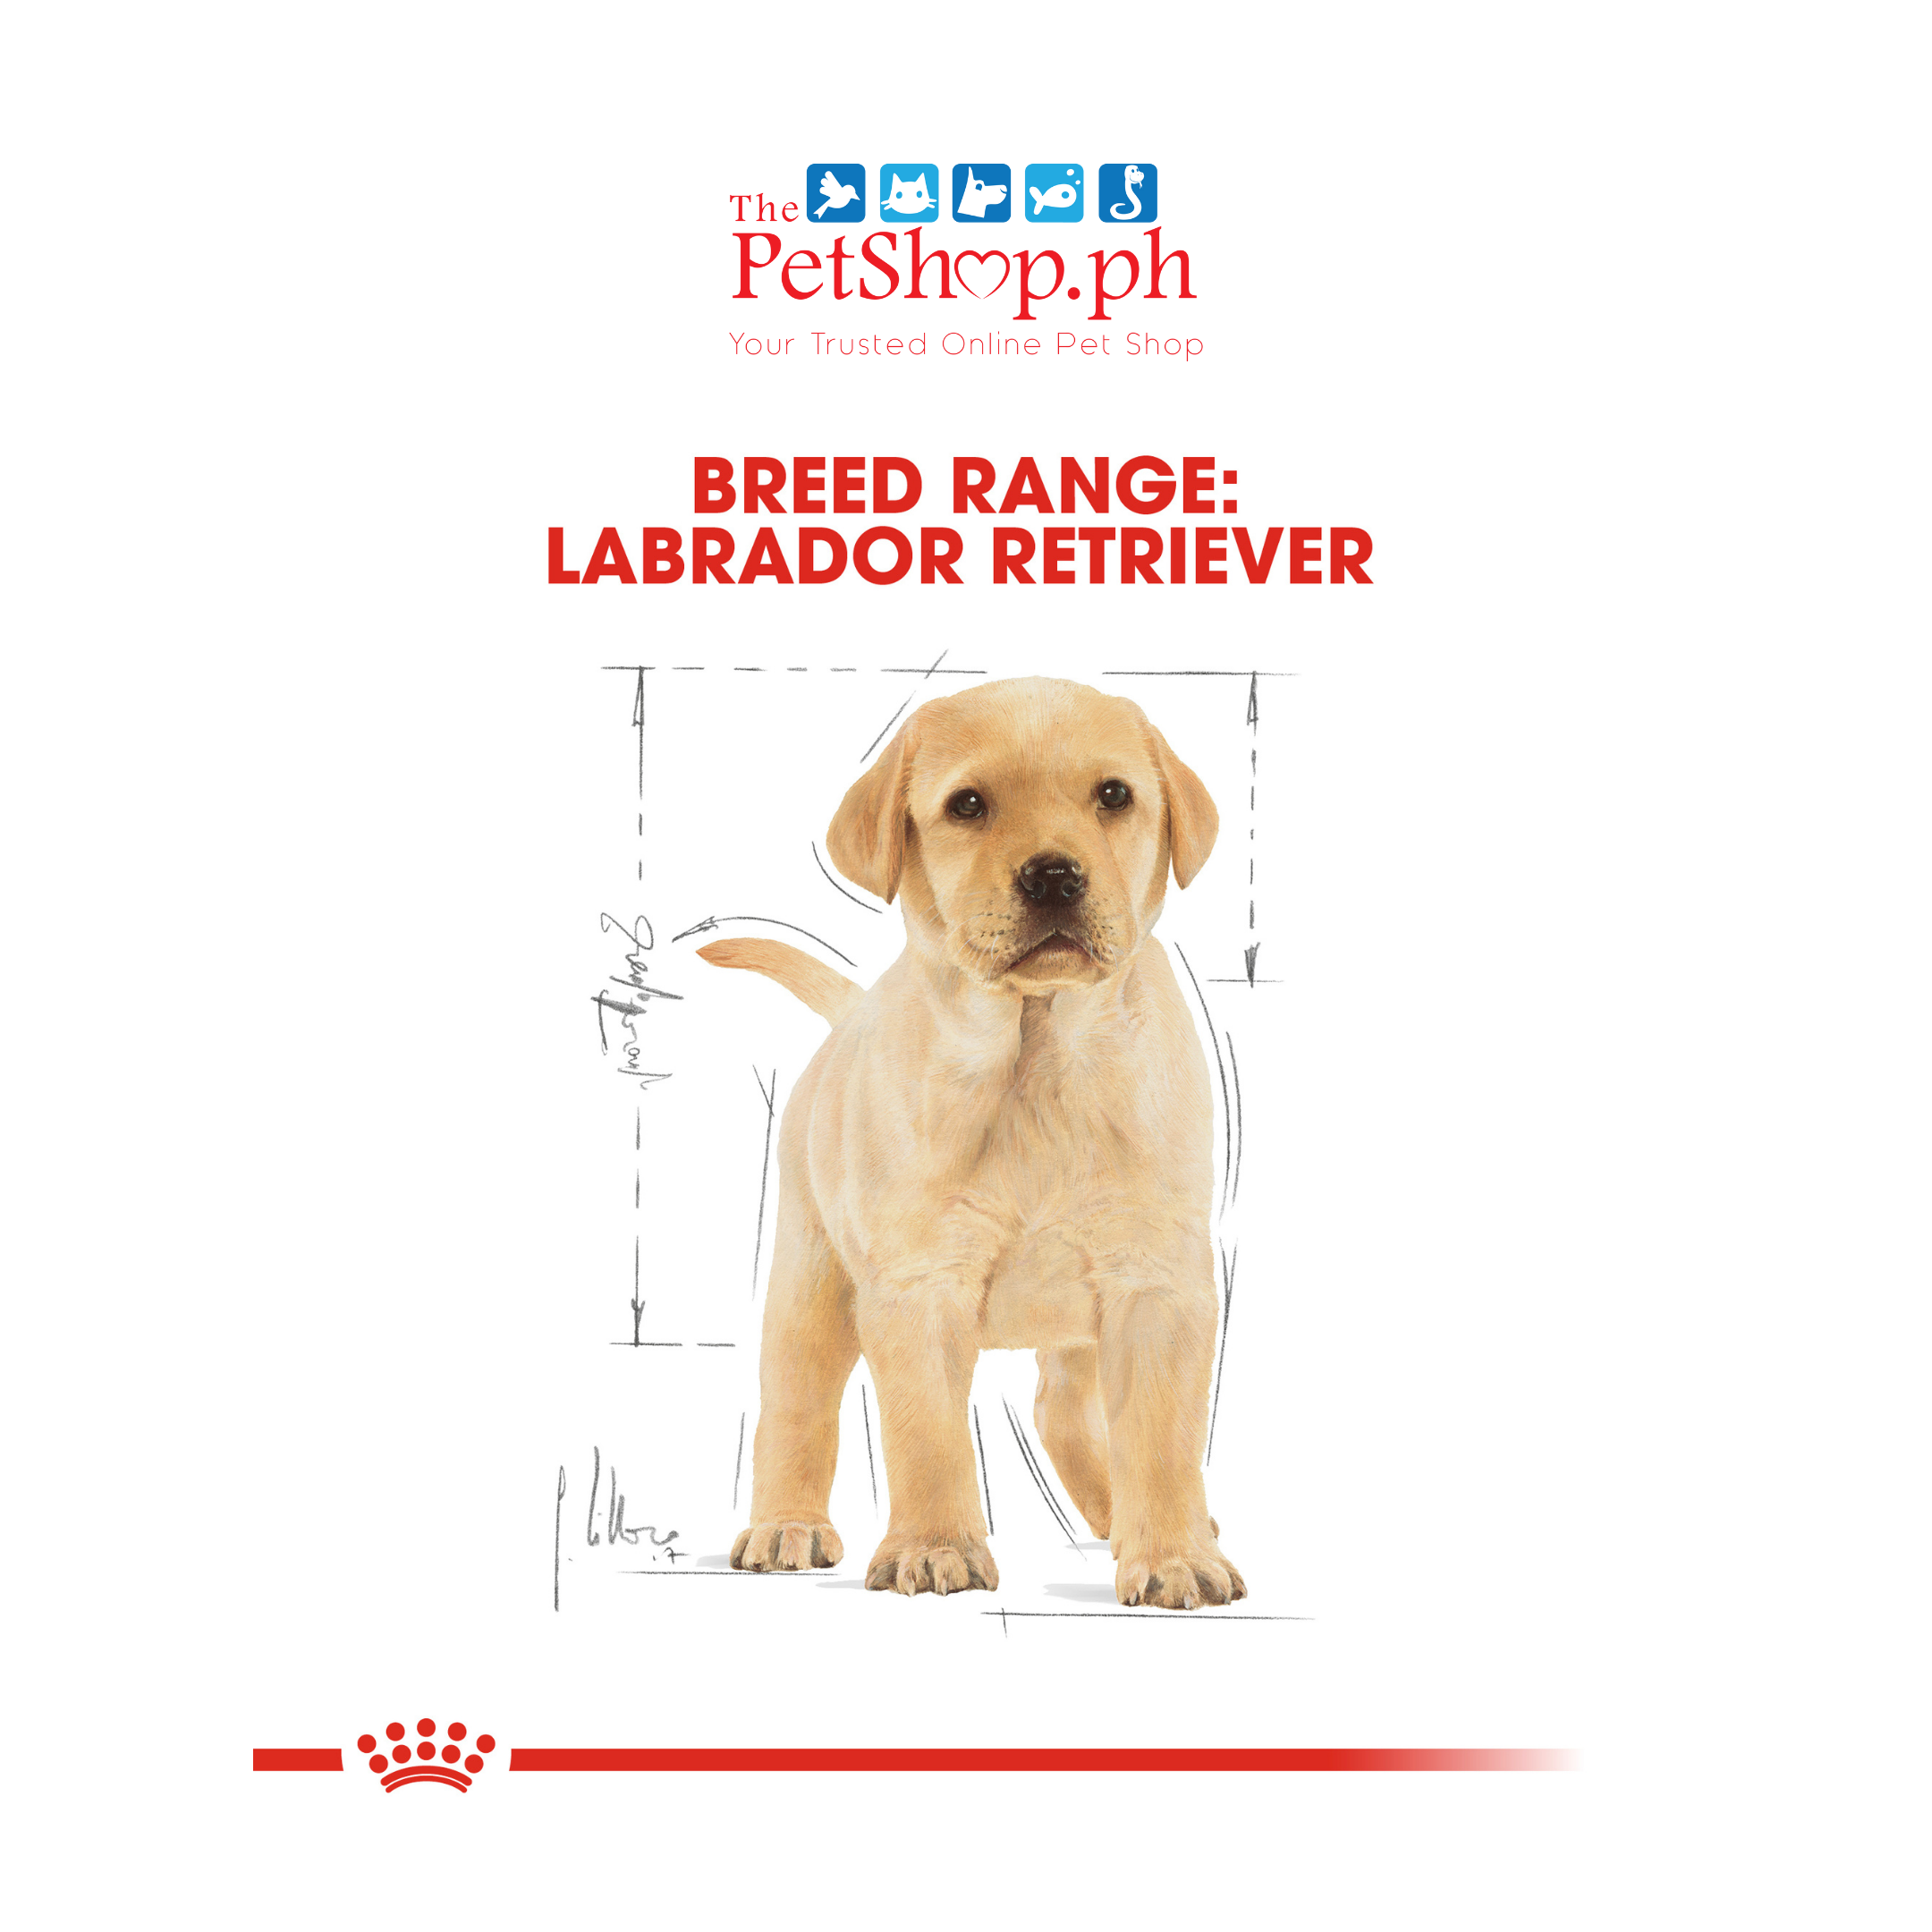 Royal Canin Labrador Retriever 3kg Puppy Dry Dog Food -Breed Health Nutrition